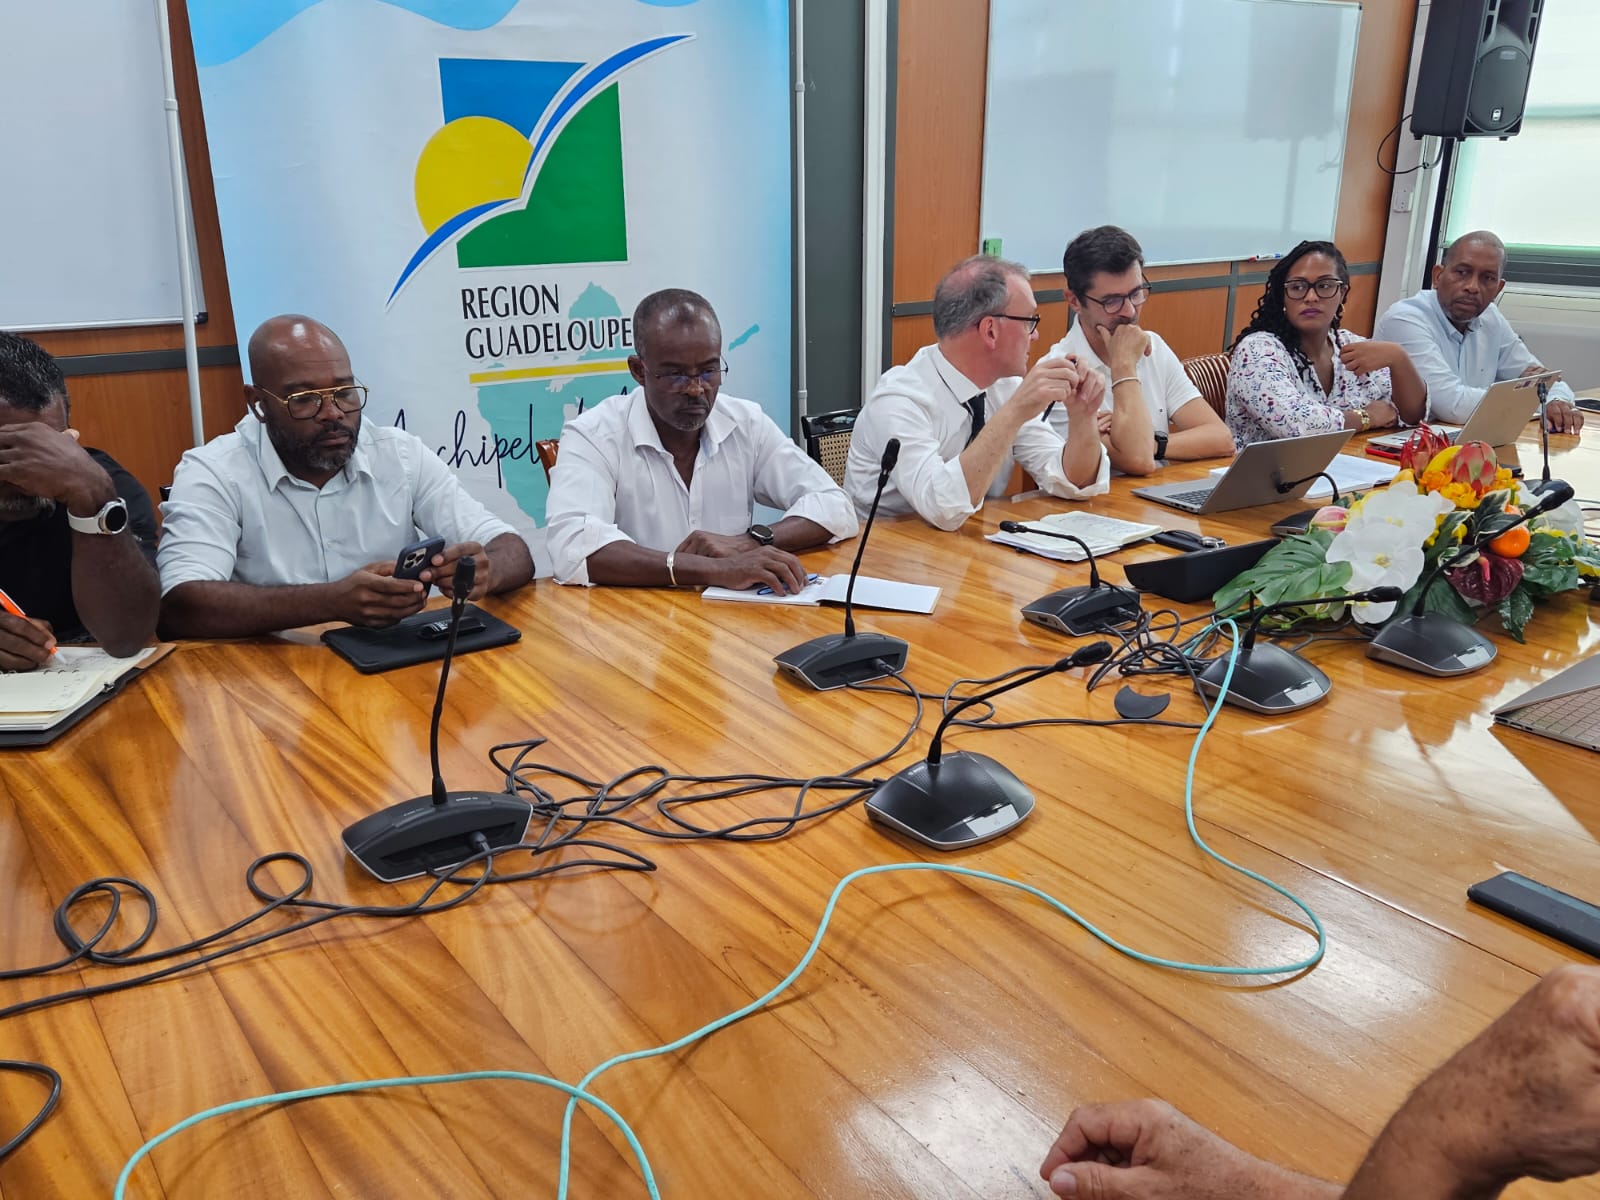     [DIRECT] Guadeloupe : conflit de la canne, la collectif refuse la proposition, Jarry toujours bloquée

